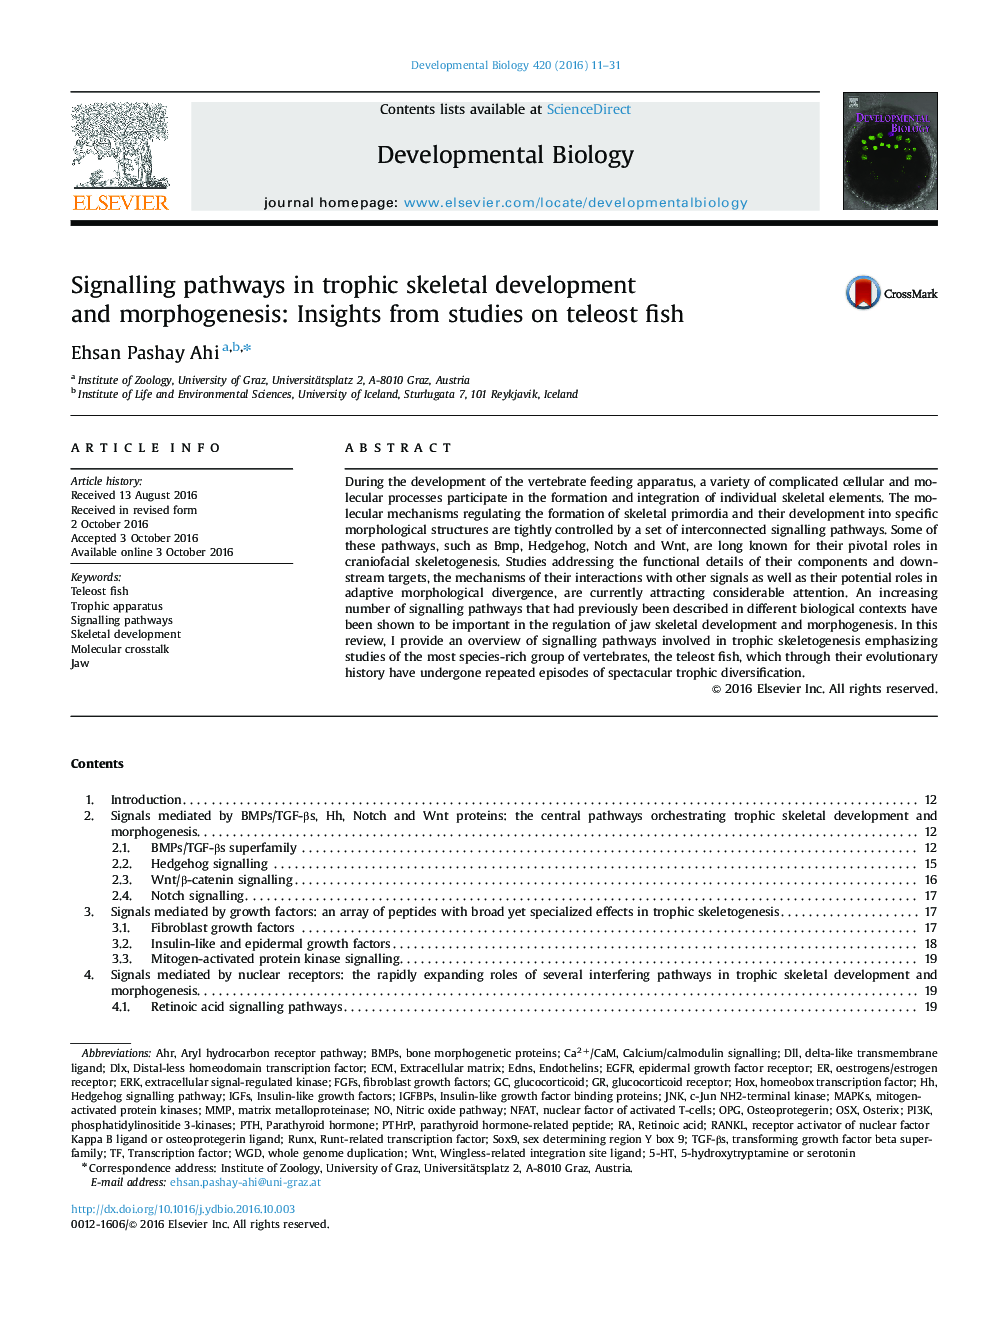 مسیرهای سیگنالینگ در توسعه و مورفوژنز اسکلتی تروفیک: بینش از مطالعات در مورد ماهیهای تلهوست 